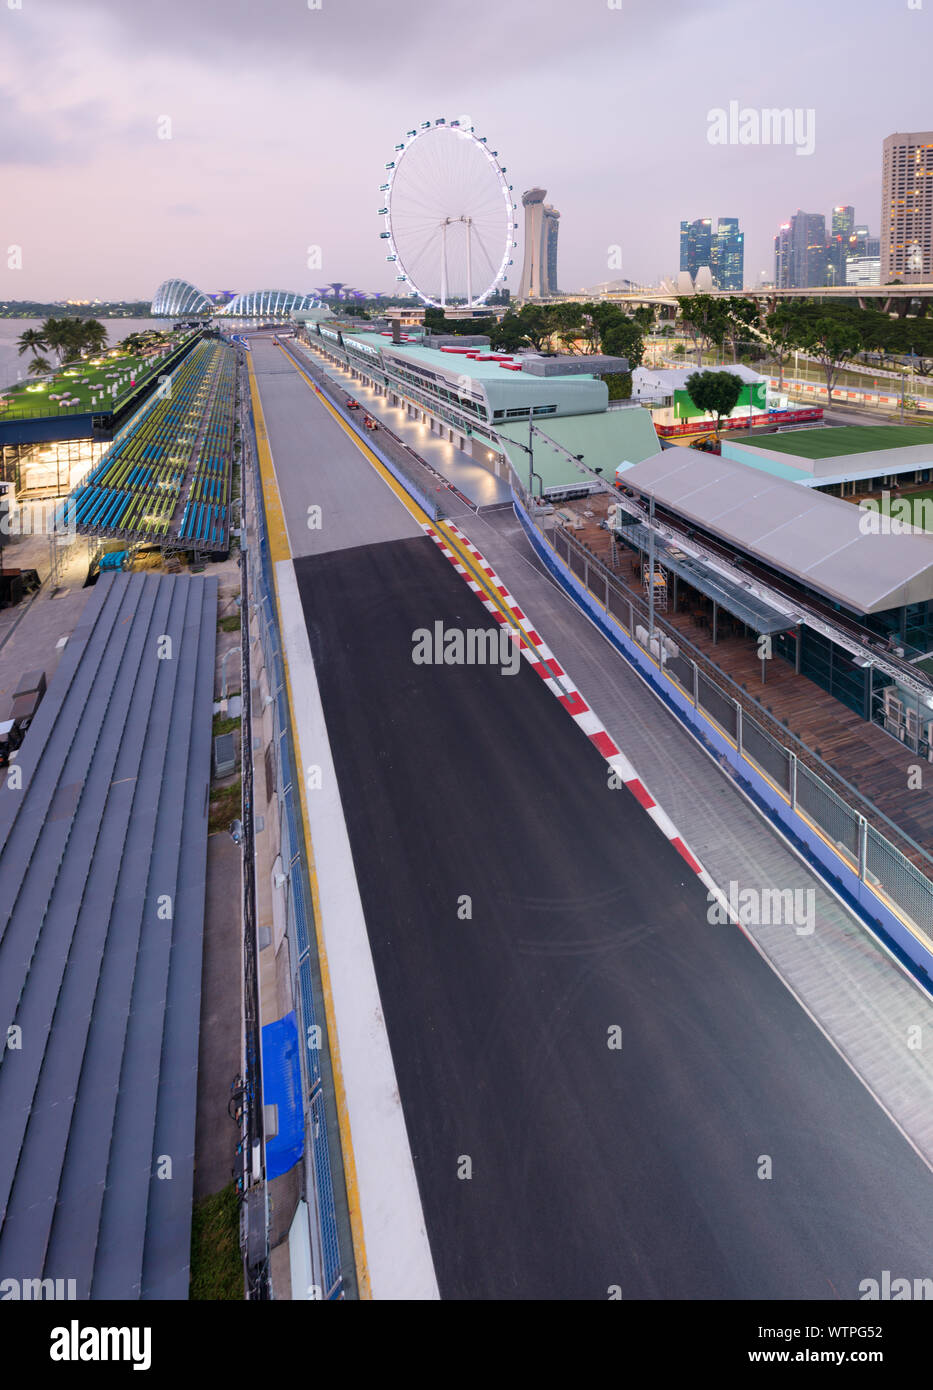 Singapur - 9 Sep 2019: die Marina Bay Street Circuit wird fertig, die Singapur Nachtrennen der Formel Eins Grand Prix herzlich willkommen. Die Haupttribüne ist l Stockfoto